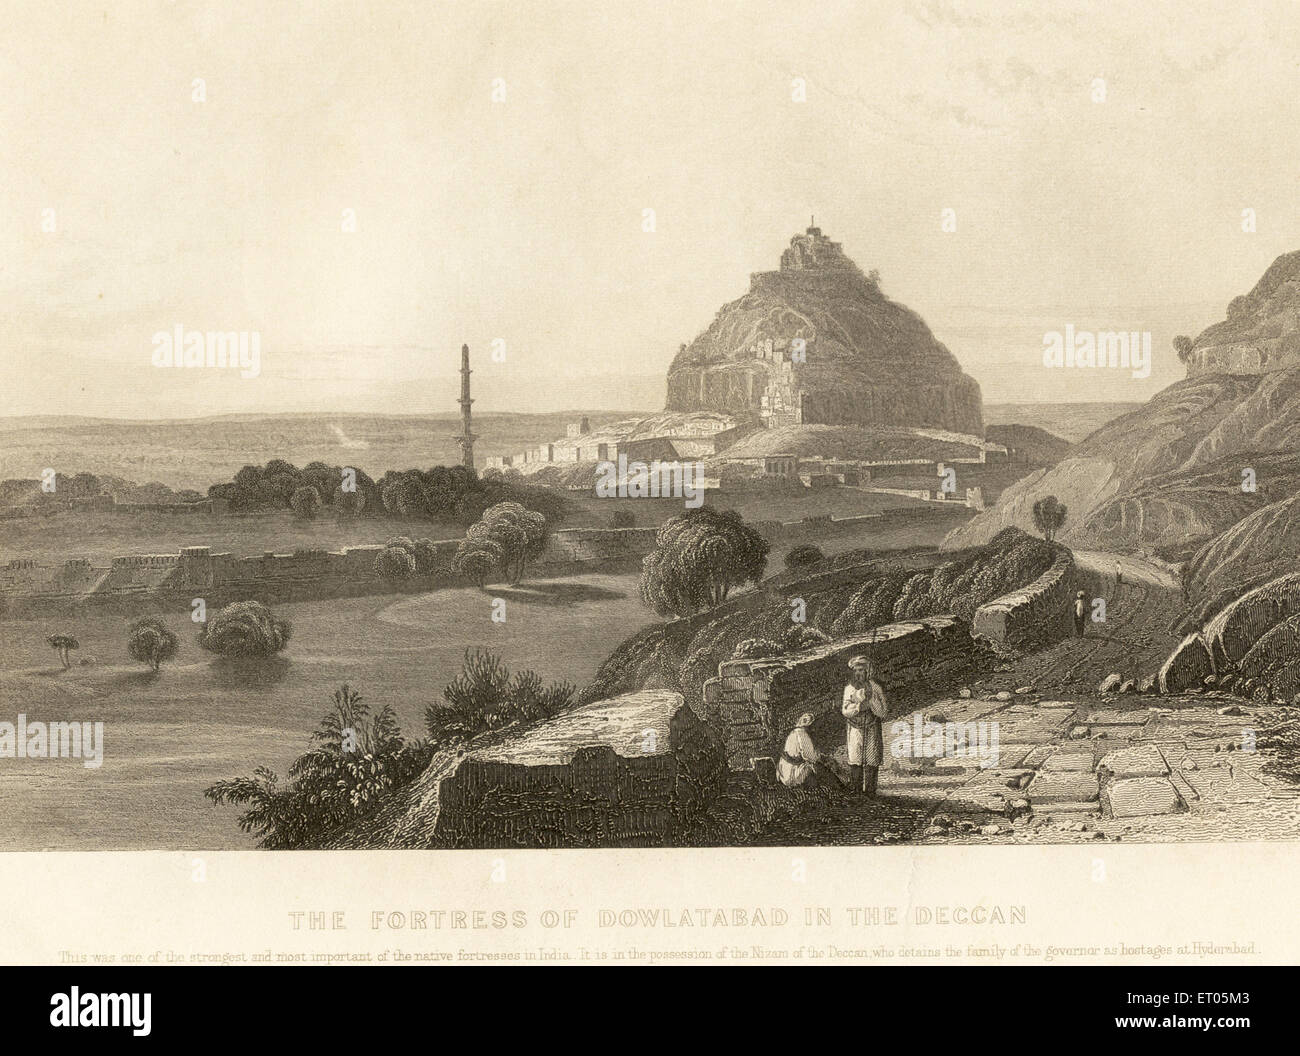 Daulatabad Fort im Deccan im Besitz des Nizam von Hyderabad; Maharashtra; Indien; alter Jahrgang 1800s Bild Stockfoto